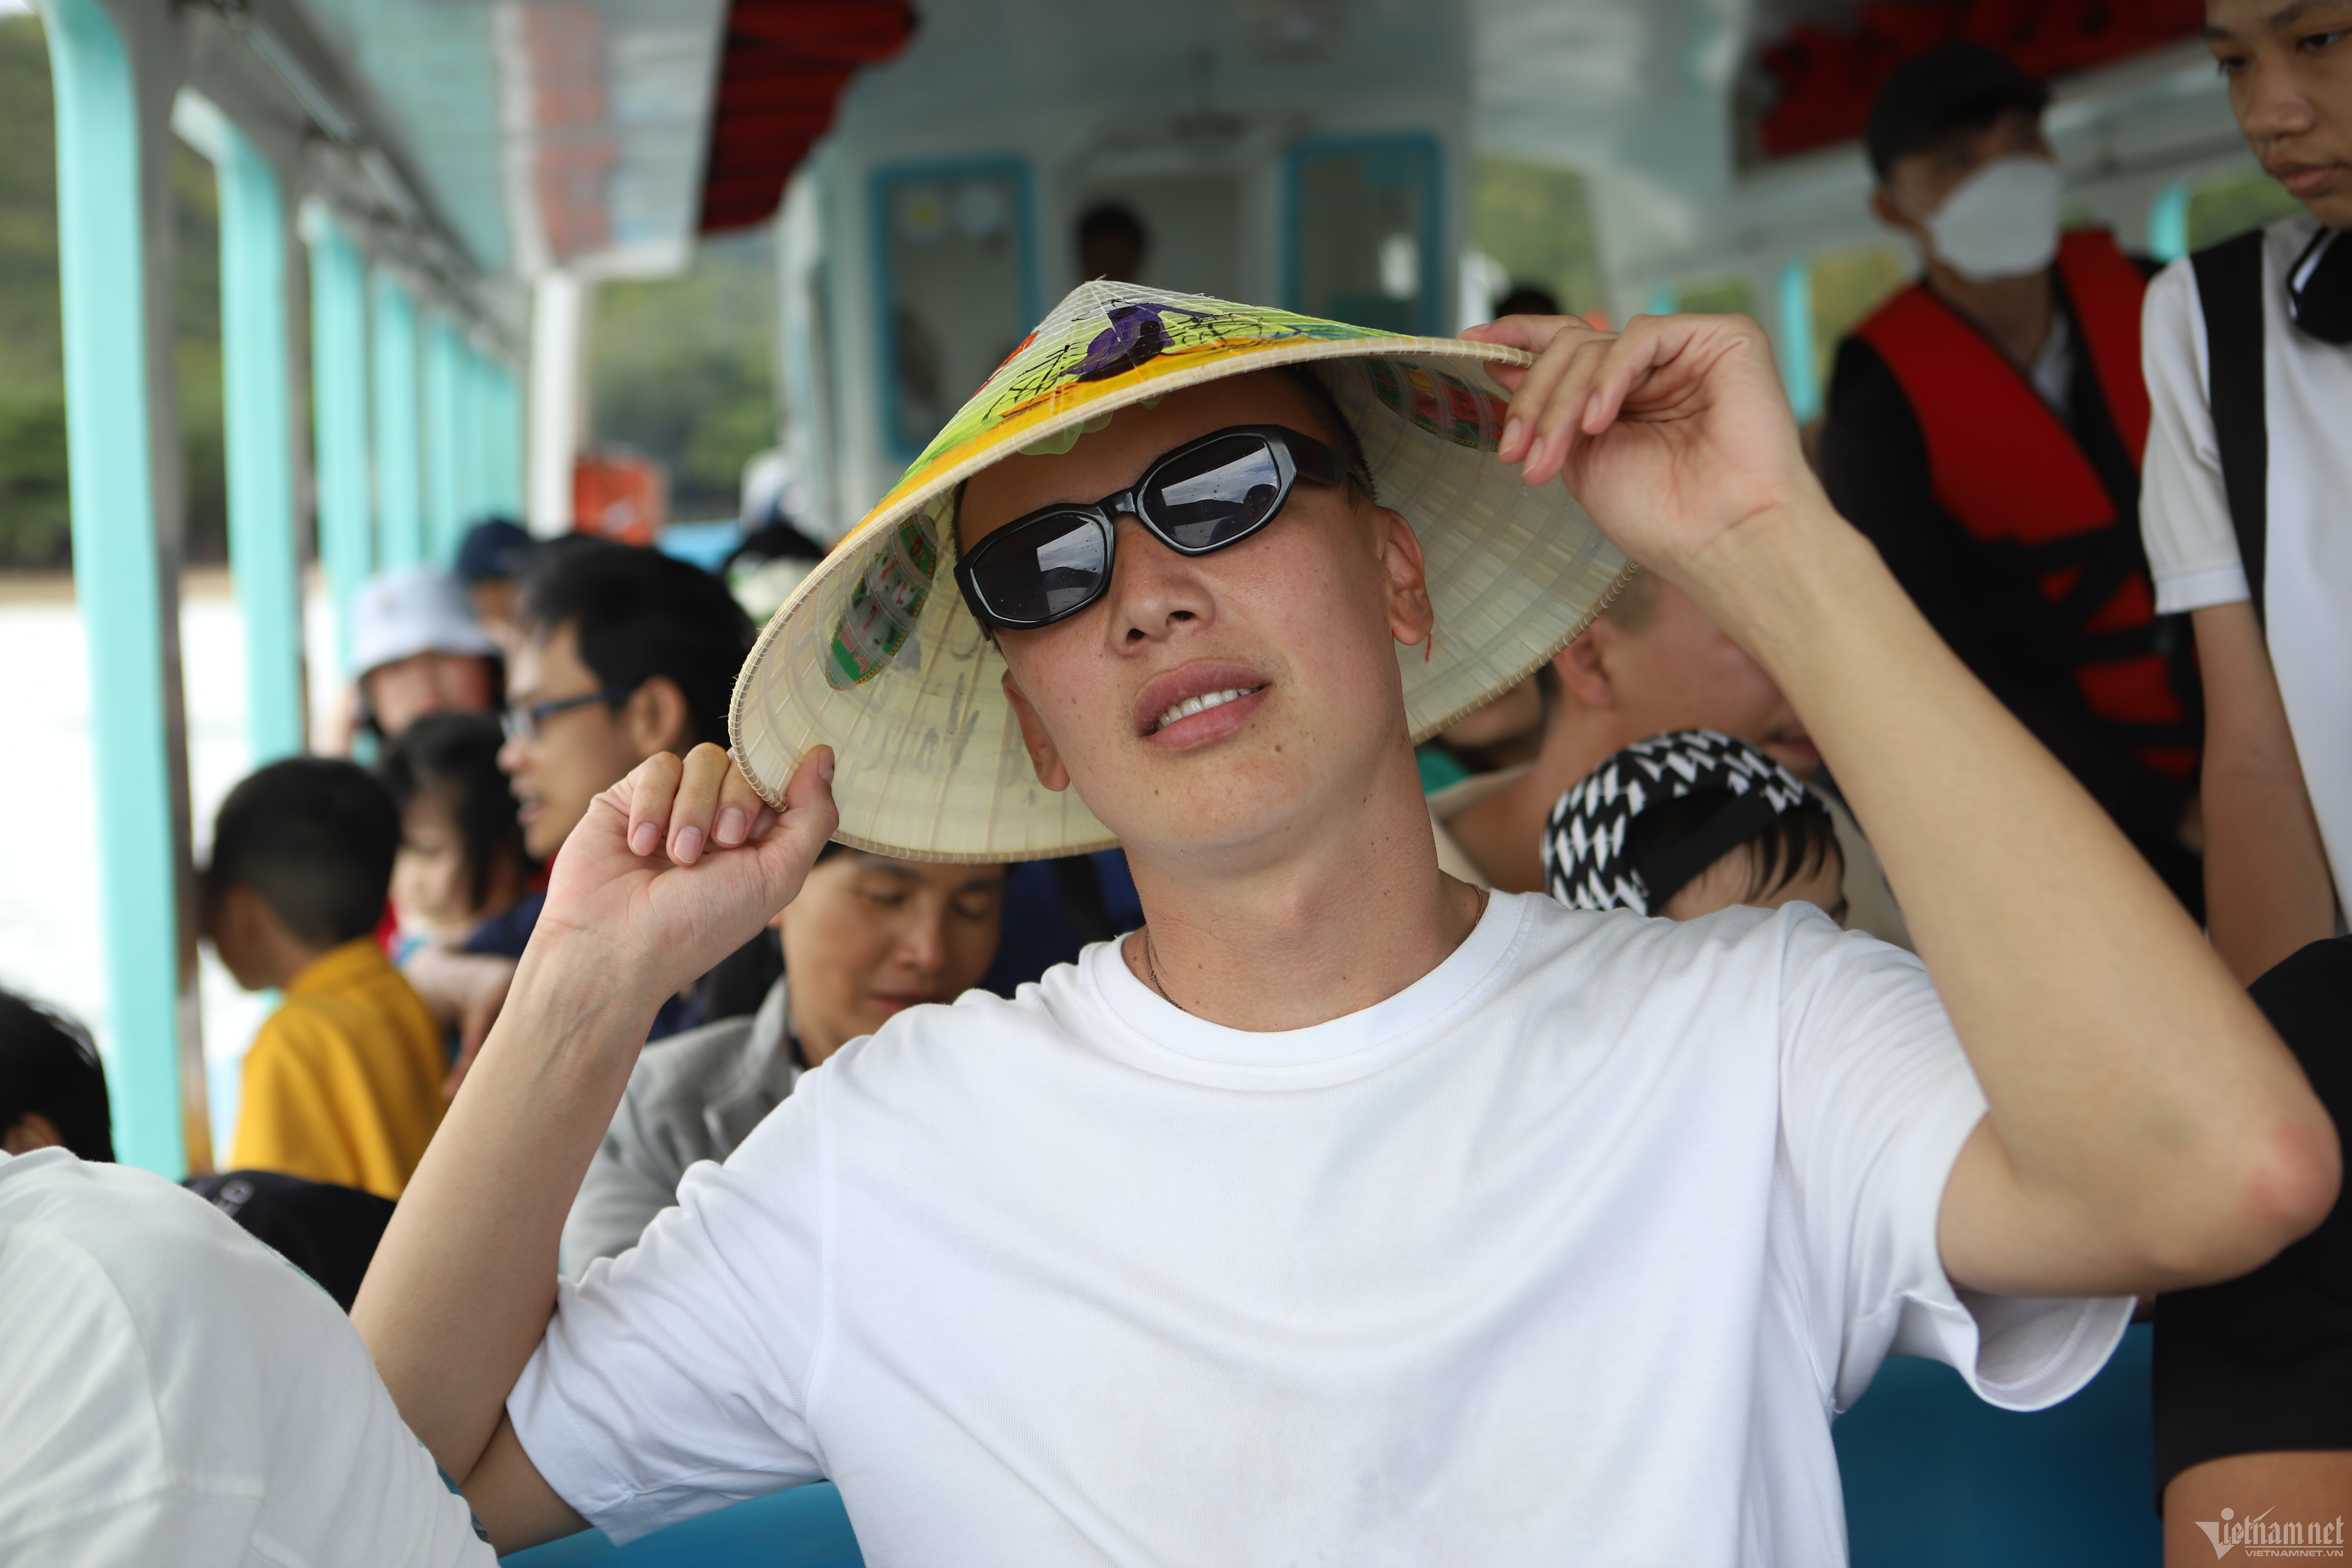 Du khách đổ ra các đảo ở Nha Trang vui chơi, hào hứng tự tay cho đà điểu ăn